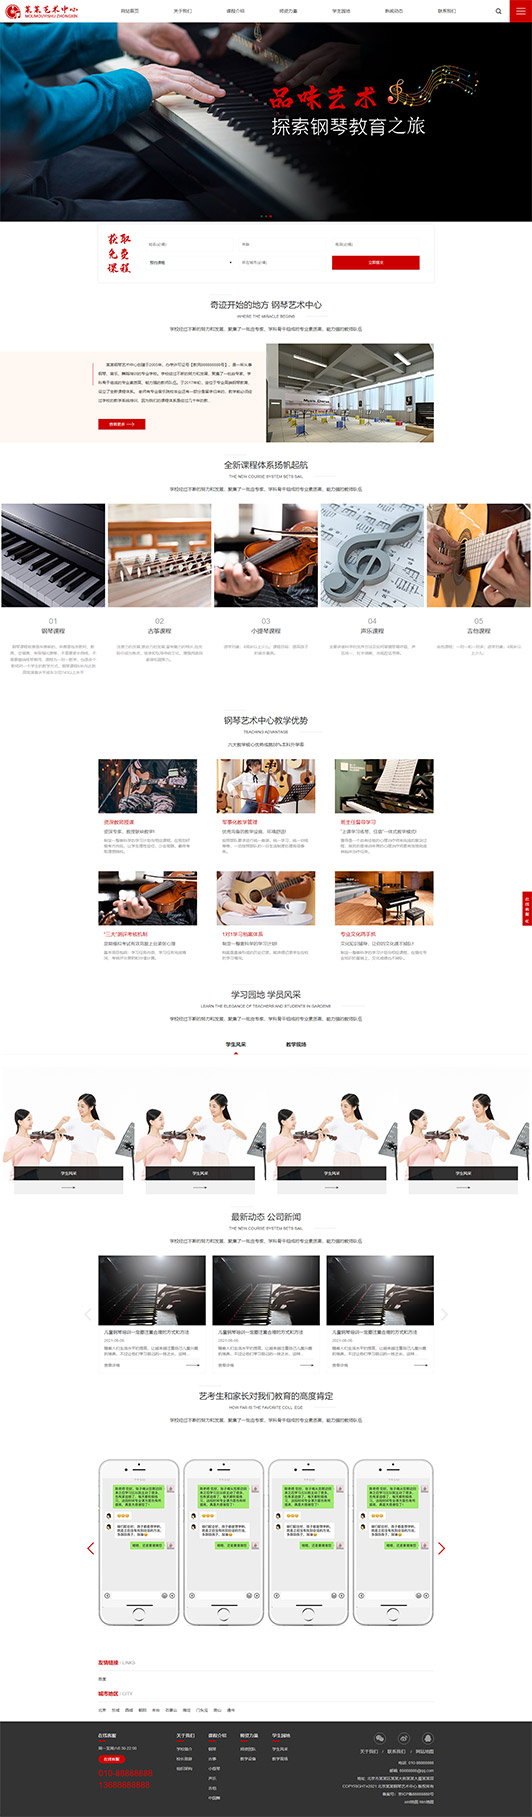 甘肃钢琴艺术培训公司响应式企业网站